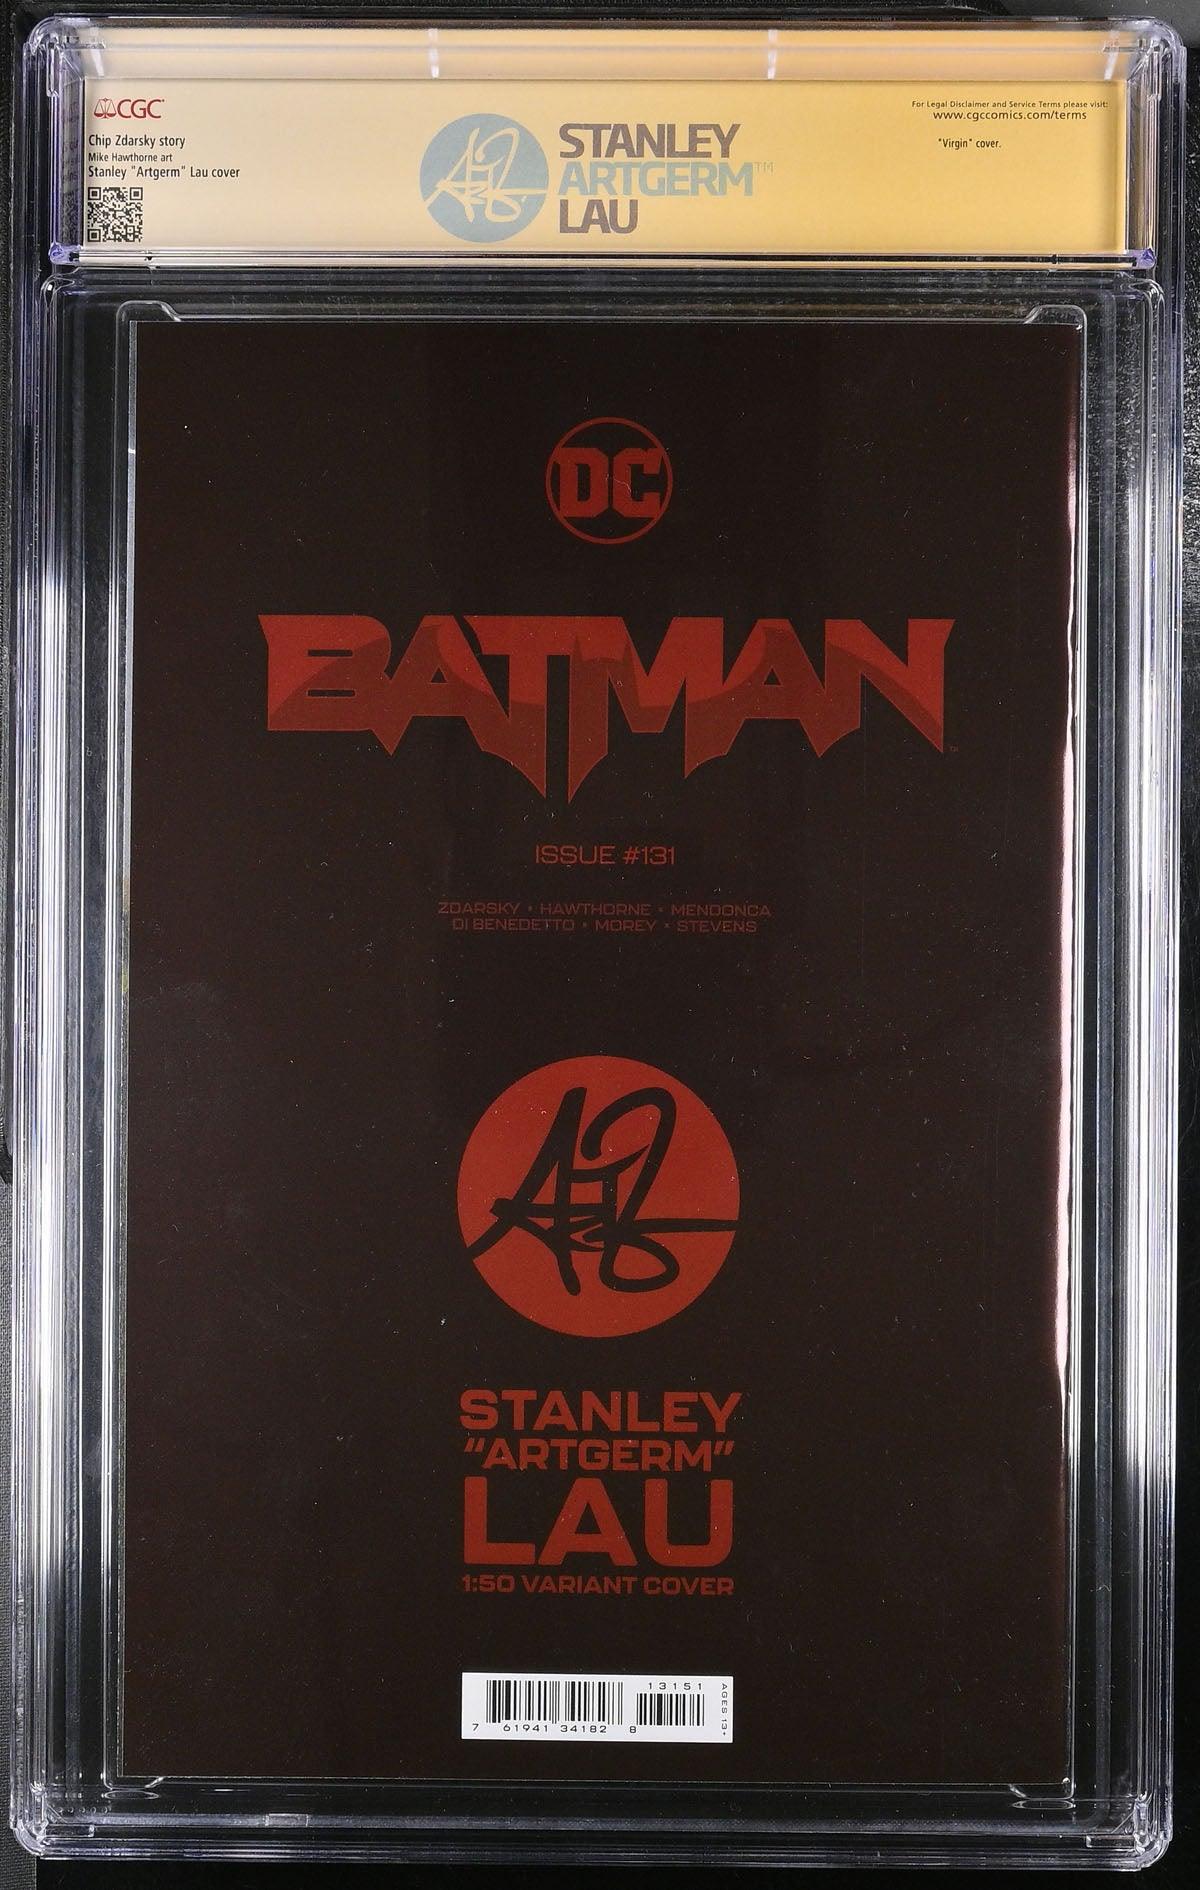 CGC BATMAN VOL 3 #131 1:50 LAU FOIL EDITION (9.8) SIGNATURE SERIES - SIGNED BY STANLEY "ARTGERM" - Kings Comics